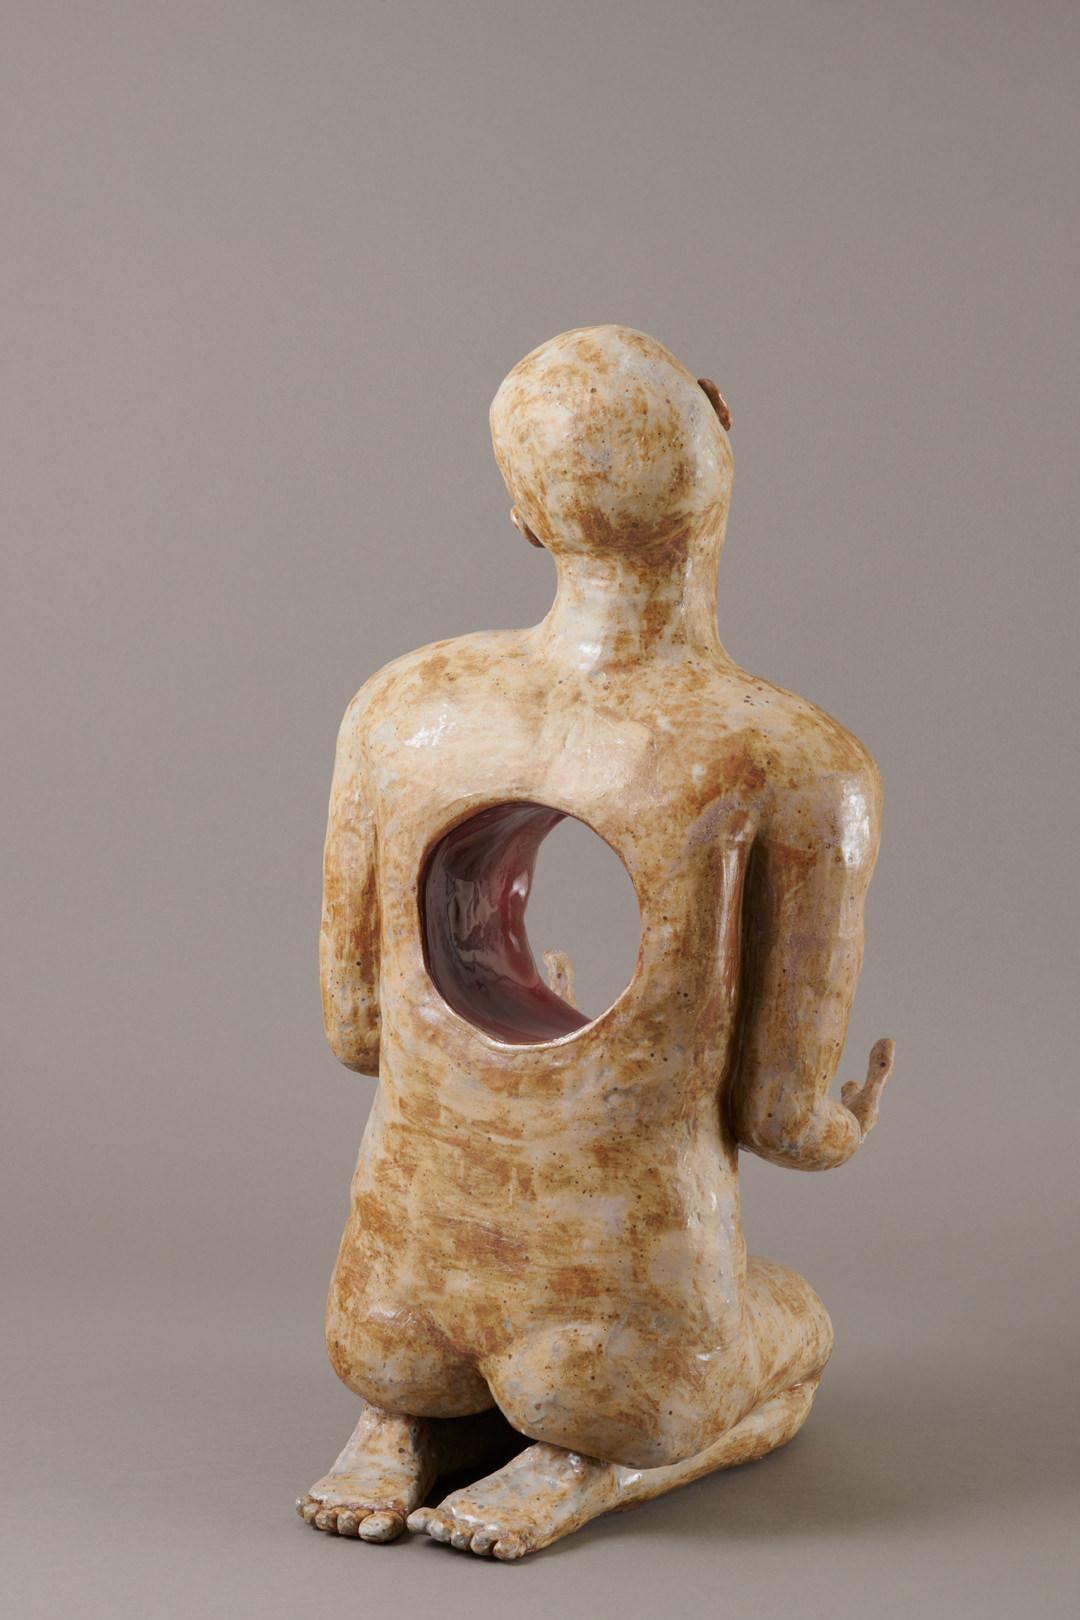 Zeitgenössische glasierte Keramik-Skulptur einer knienden Figur aus dem 21. Jahrhundert – Sculpture von Kristen Newell